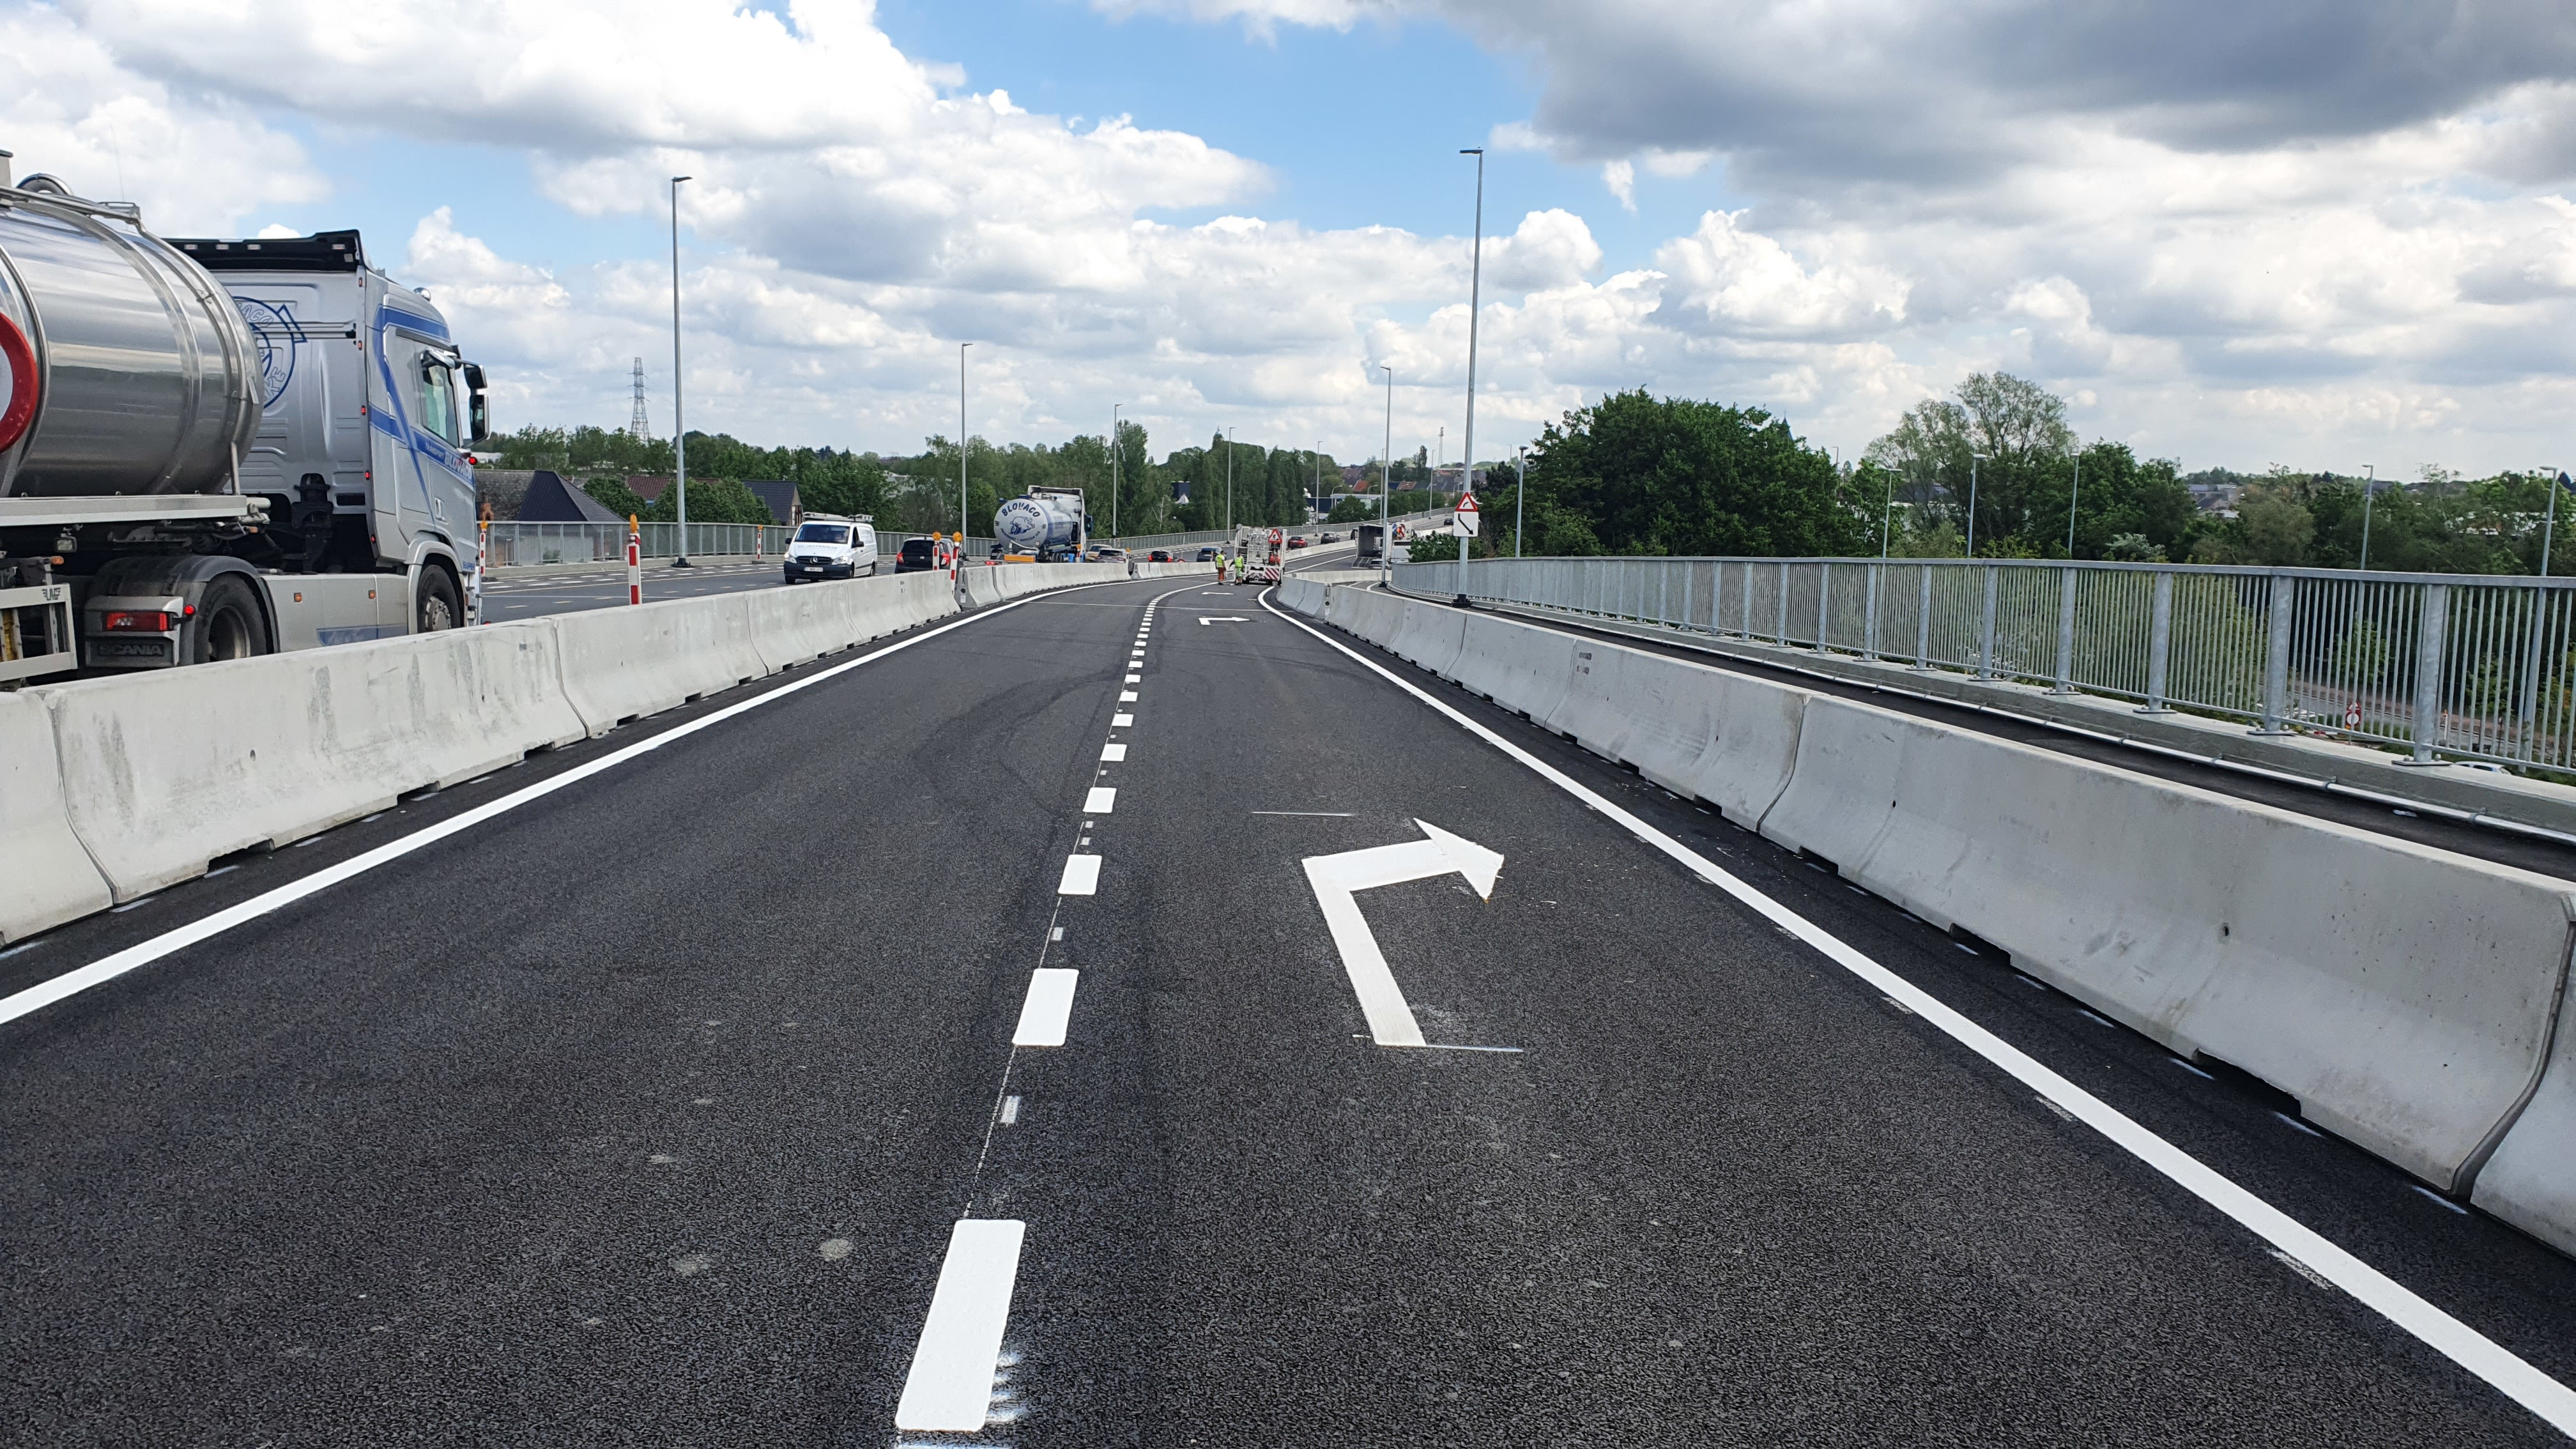 Heraanleg ring Aalst (R41): viaduct Ledebaan open voor alle verkeer vanaf 21 mei